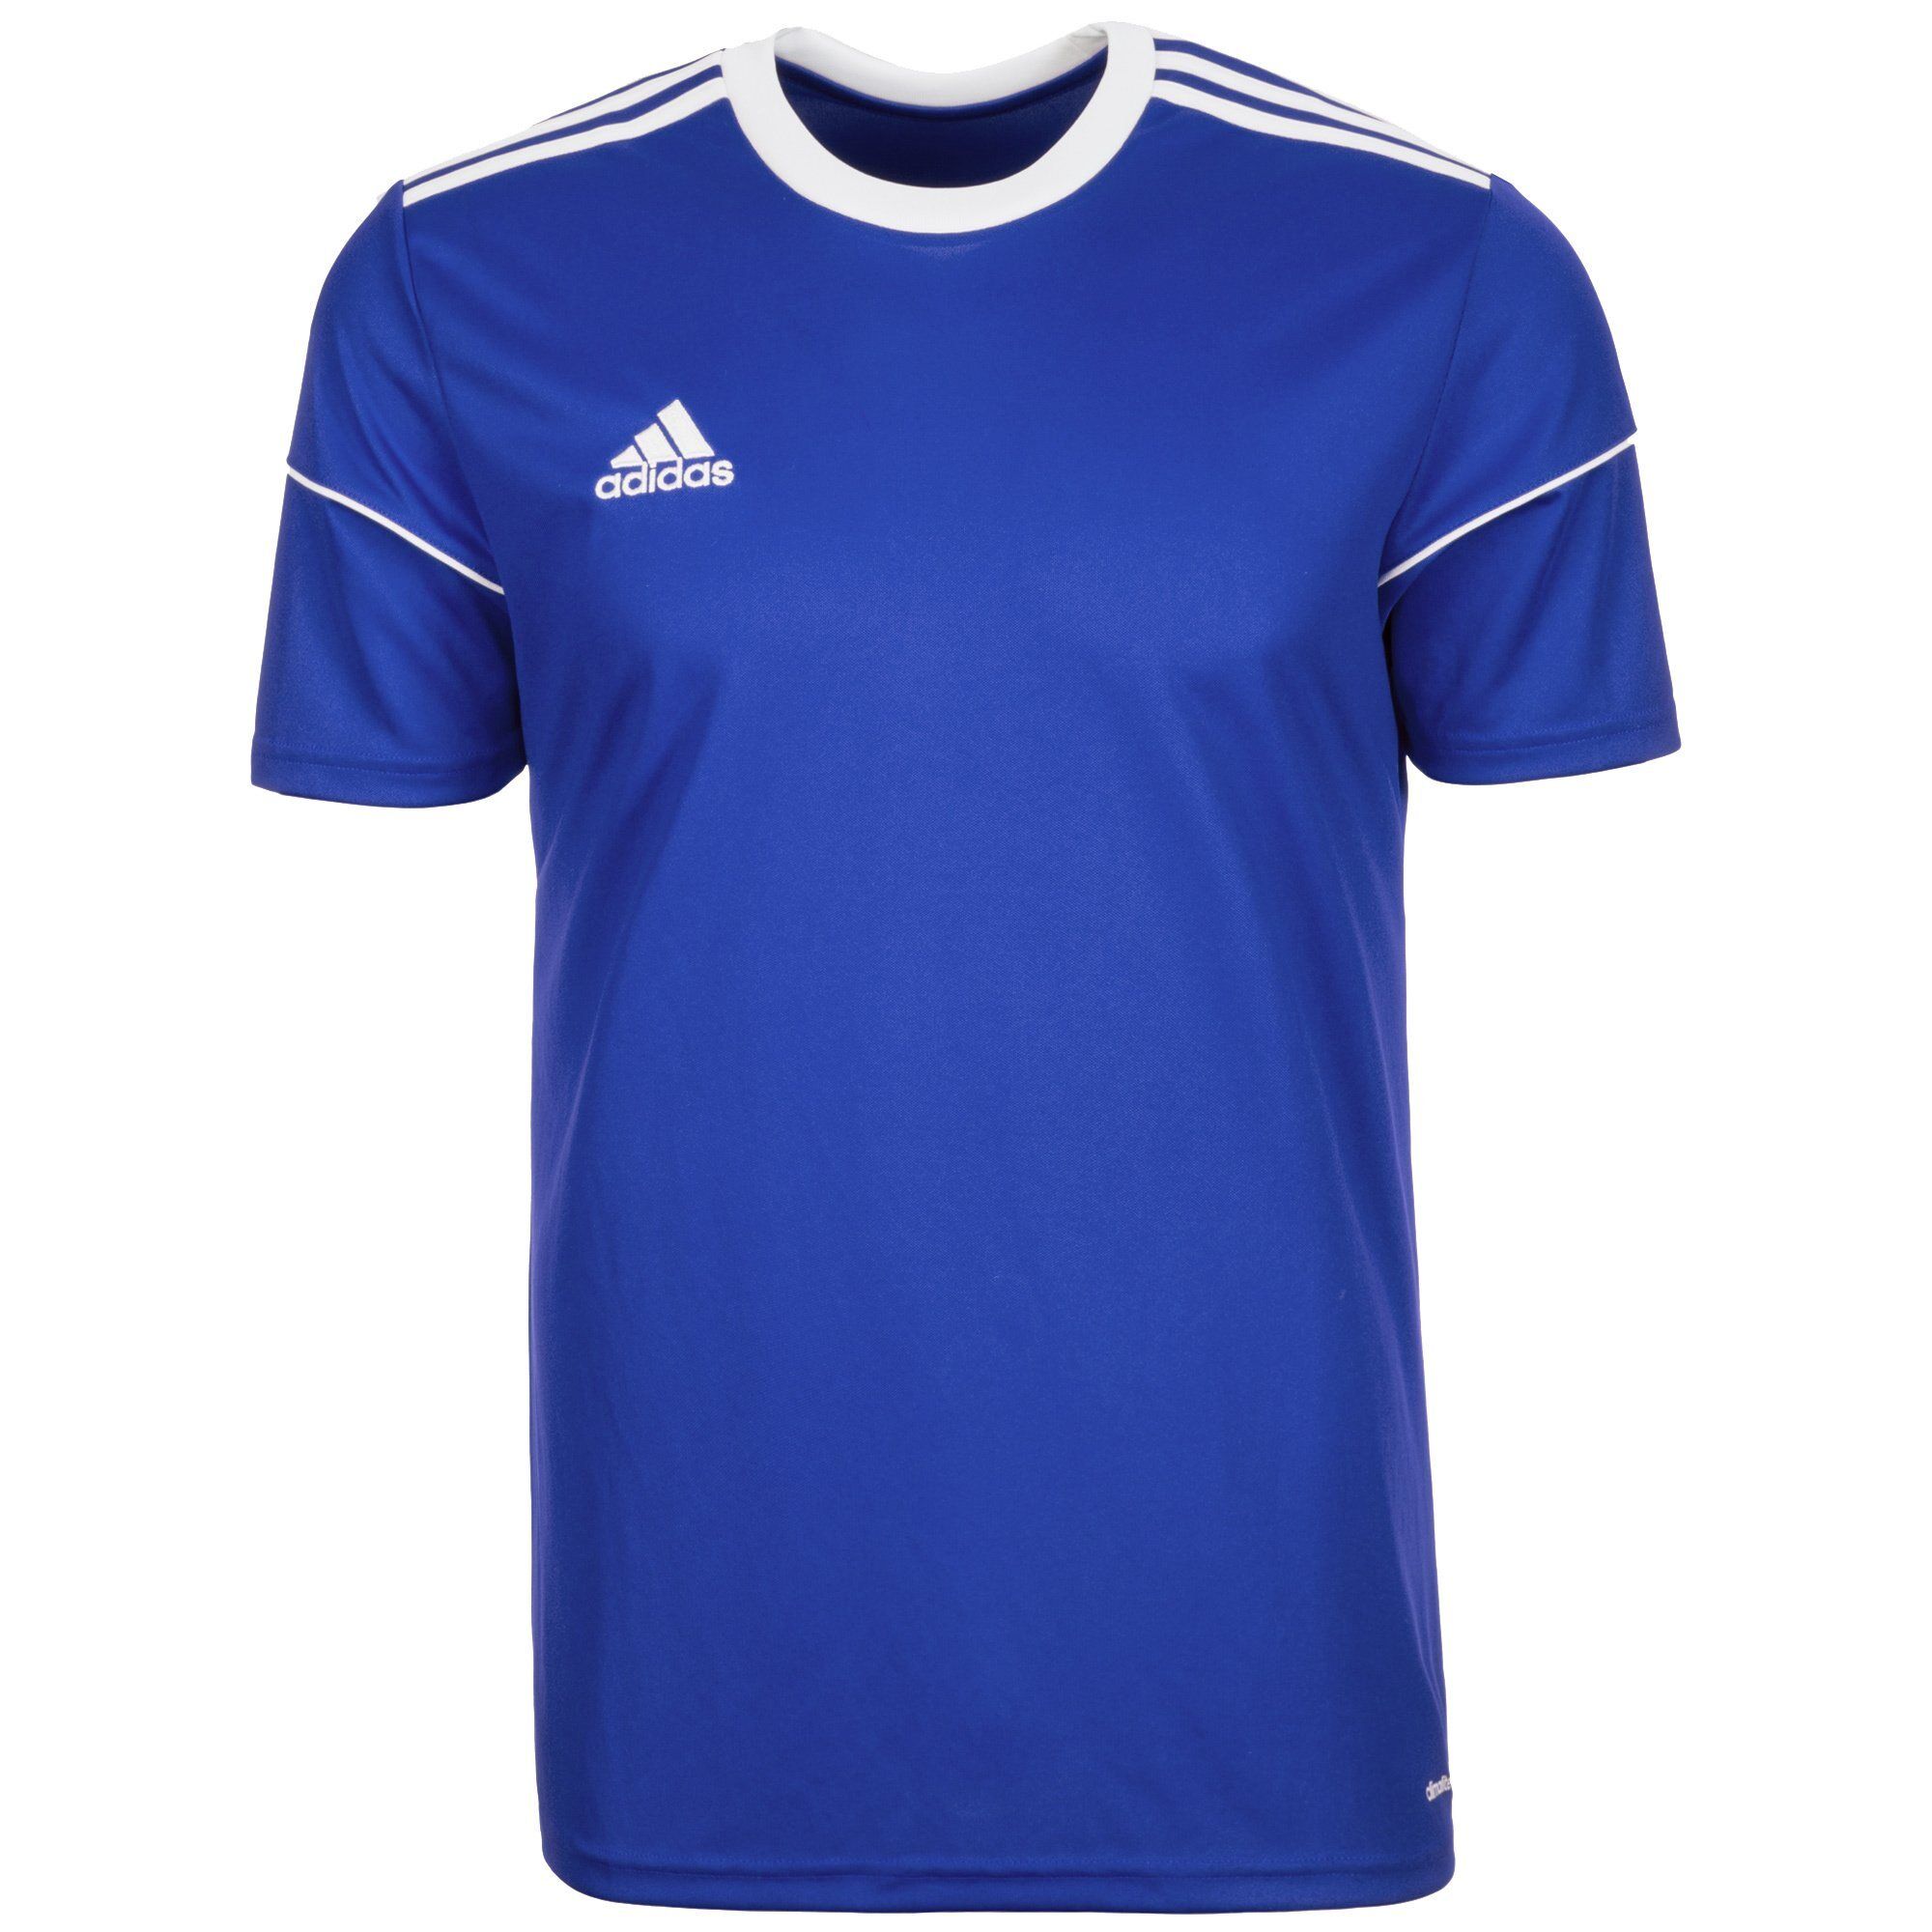 Adidas Performance Fußballtrikot »Squadra 17«, blau-weiß